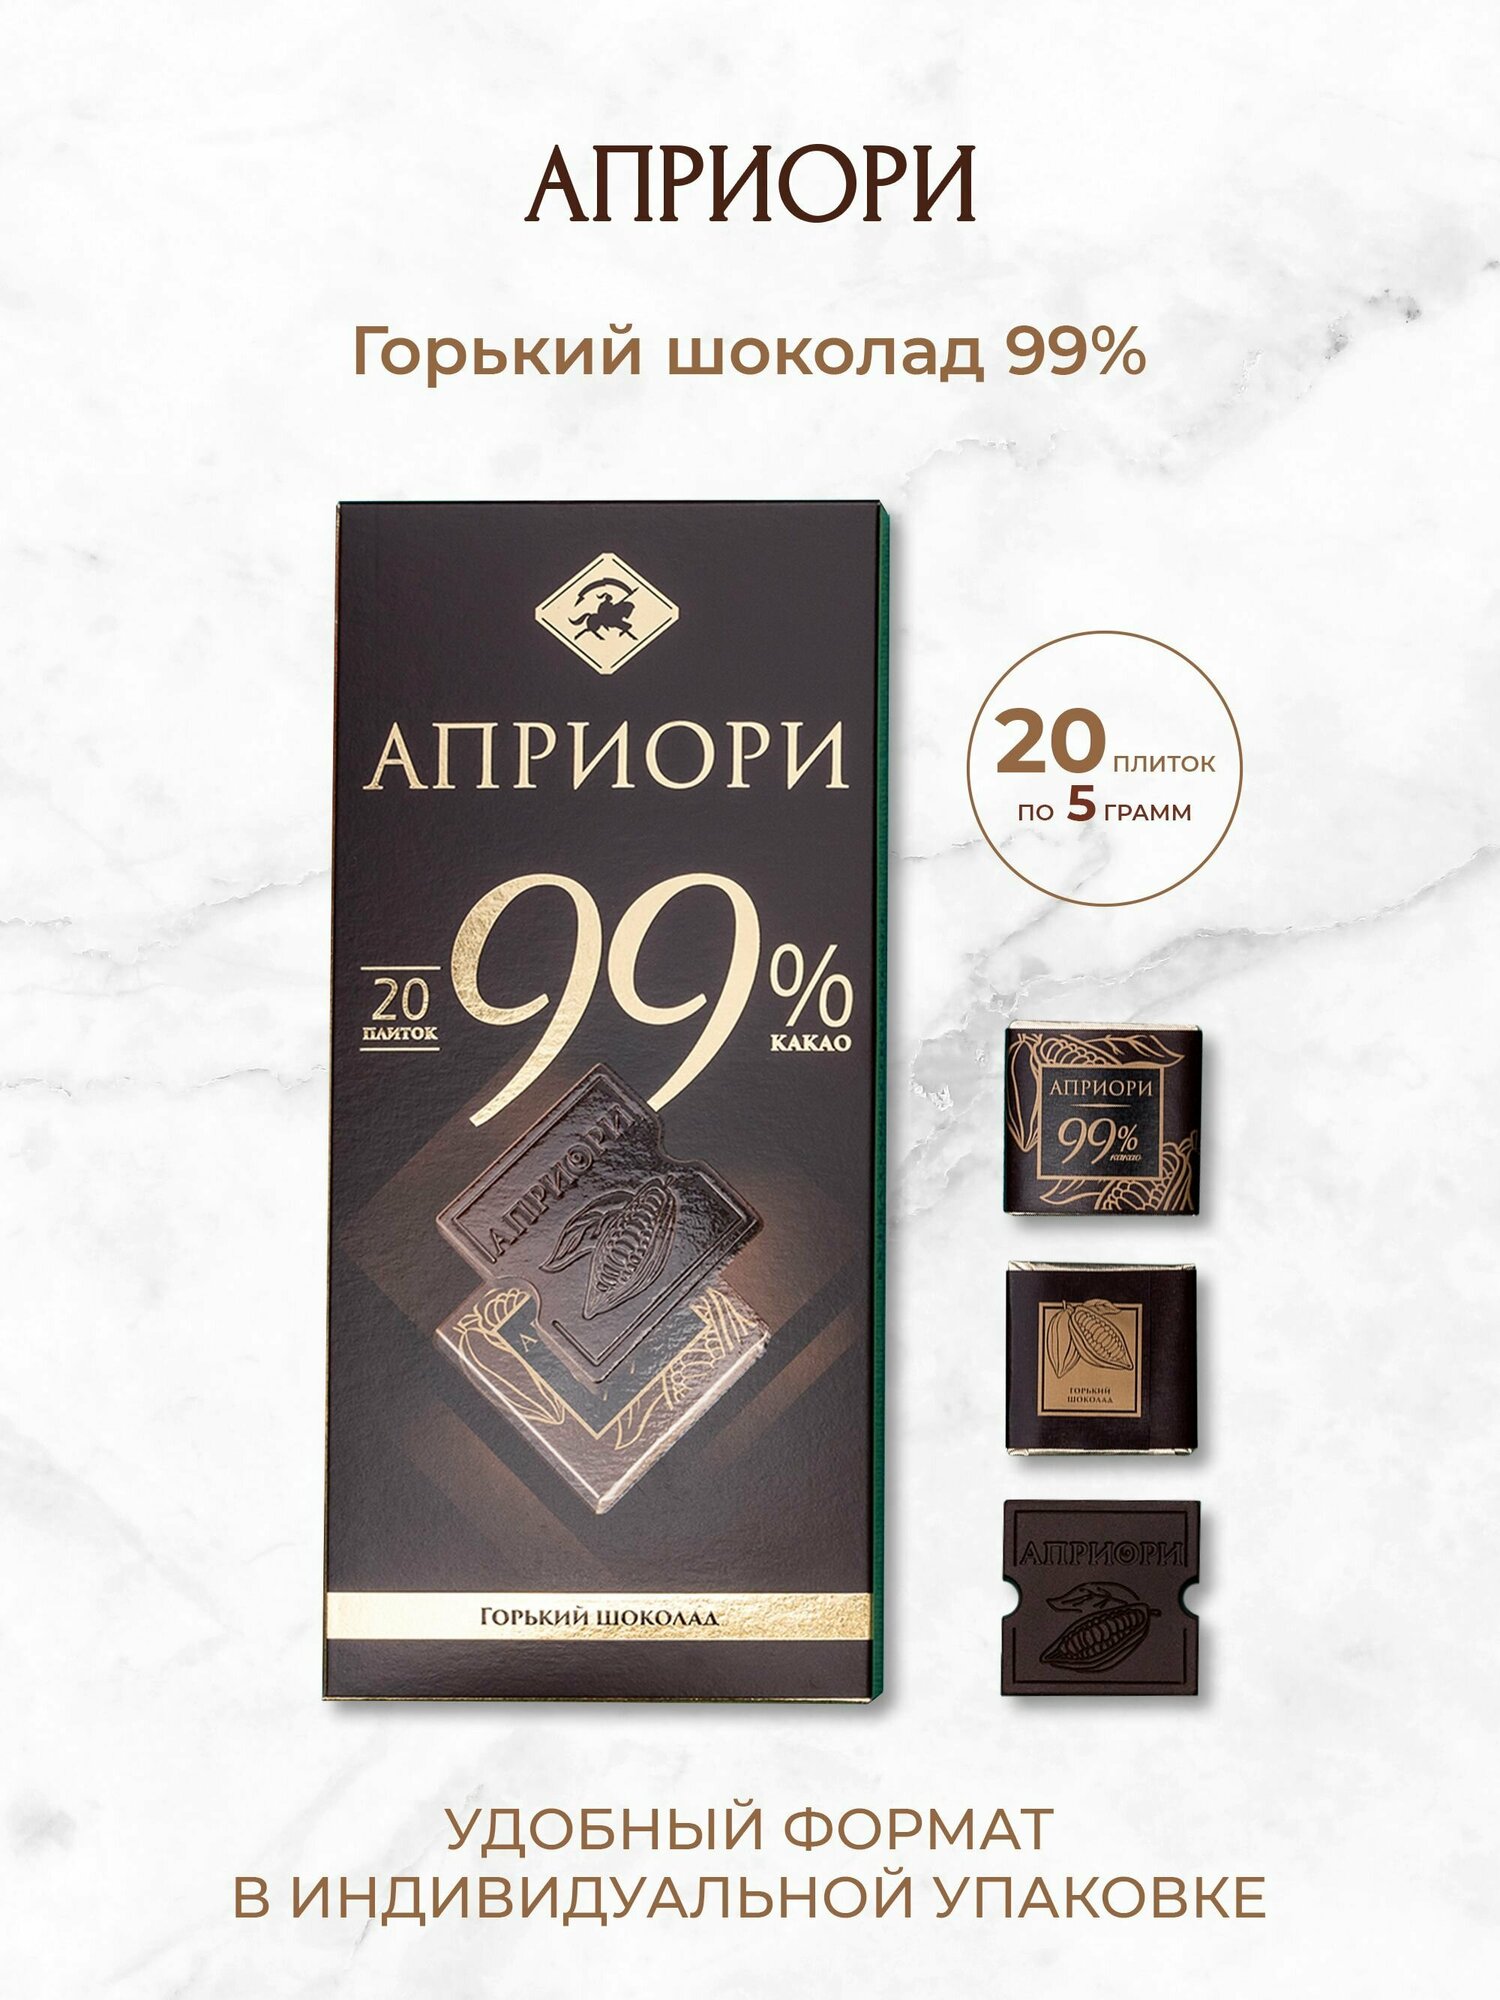 Шоколад горький Apriori 99% какао без сахара 100г — купить в интернет-магазине по низкой цене на Яндекс Маркете